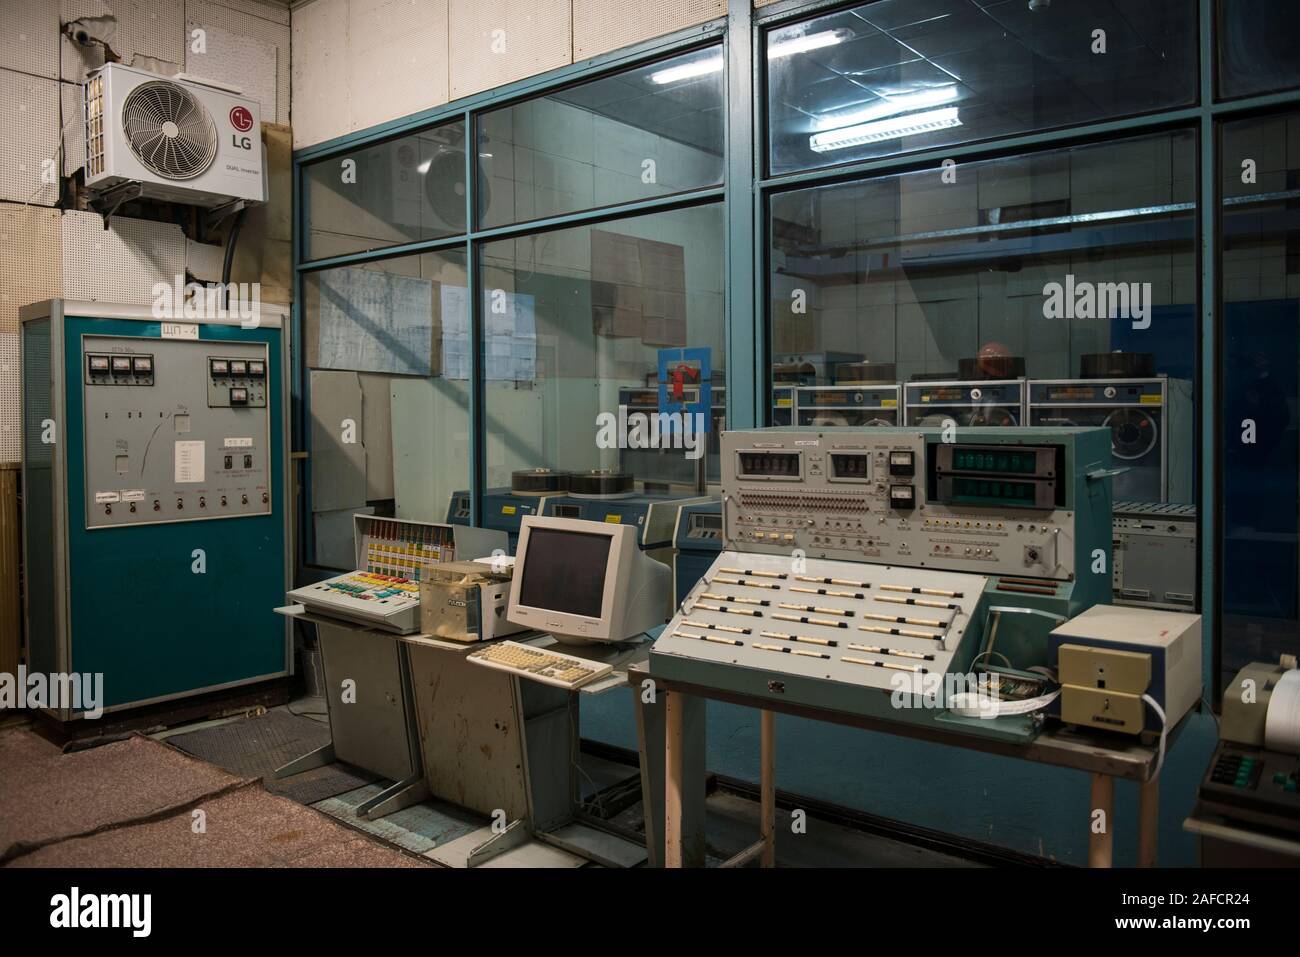 Operationen Zimmer in den Kontrollraum des Reaktors Nummer drei aus dem Atomkraftwerk von Tschernobyl verbunden. Der Raum enthält die ursprünglichen Maschinen, Computer, Monitore und Panels. Kernkraftwerk Tschernobyl, Tschernobyl, Ivankiv Rajon, Oblast Kiew, Ukraine, Europa Stockfoto